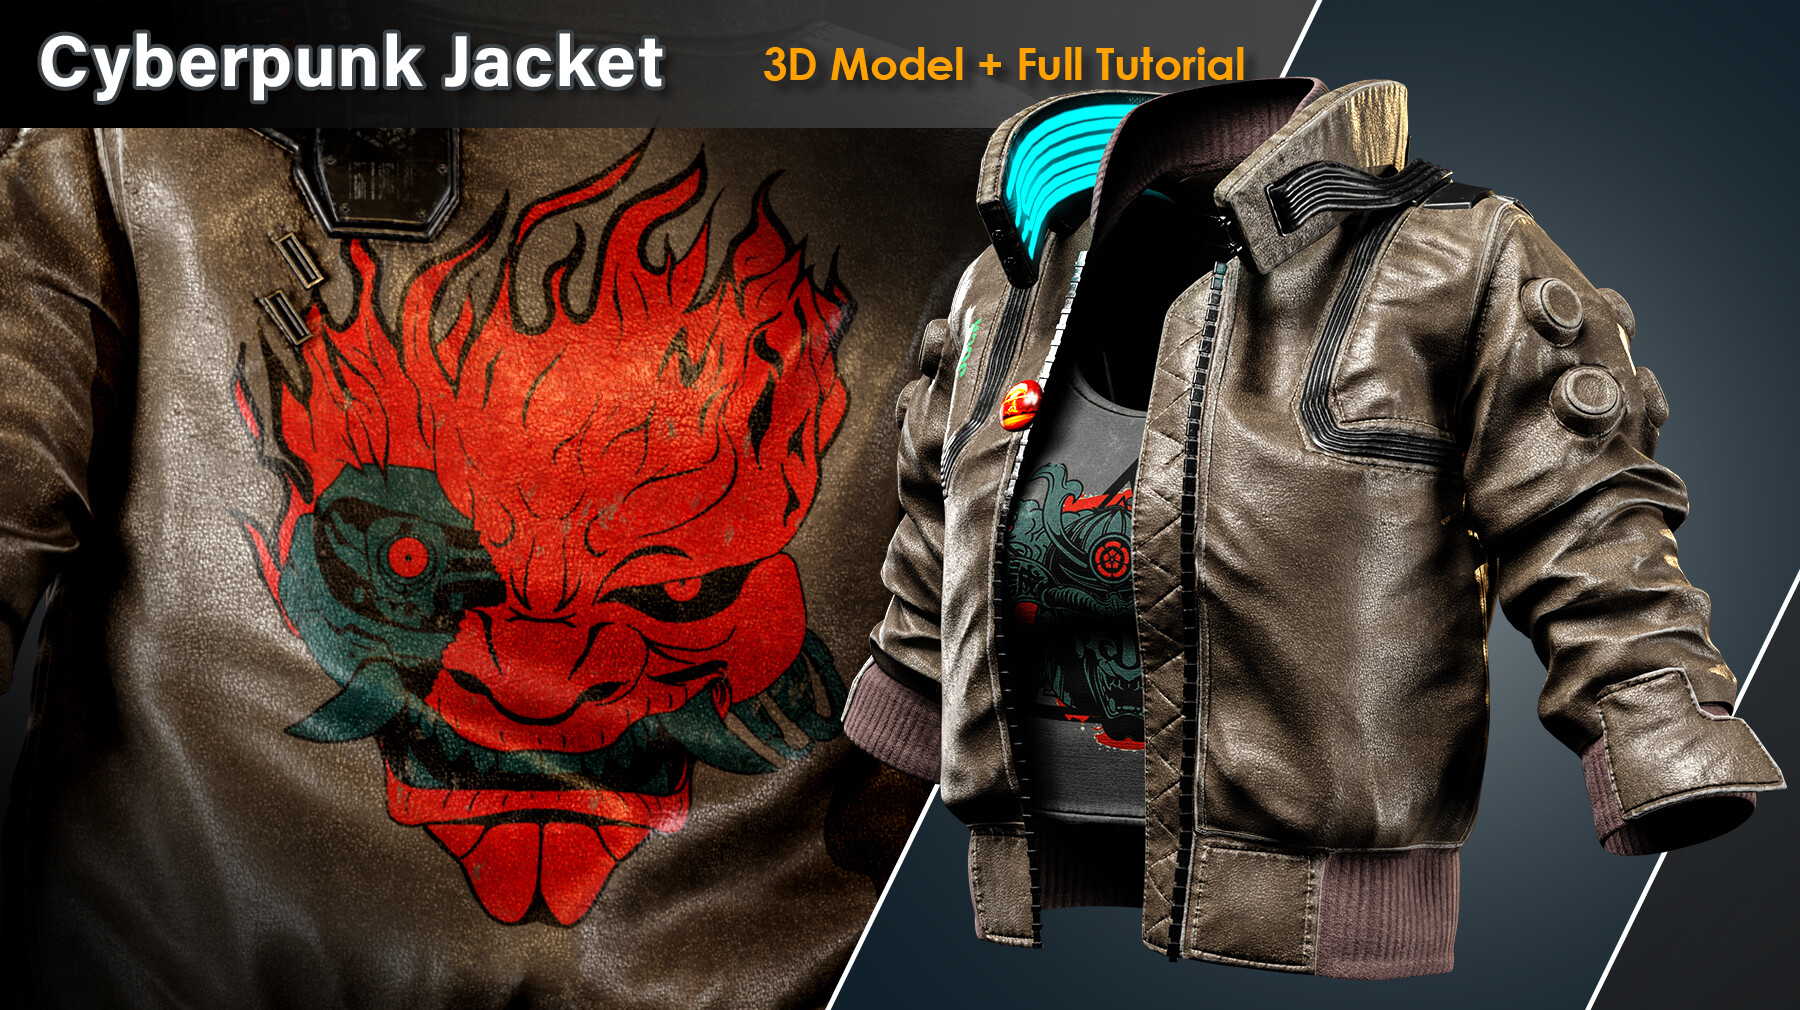 ArtStation - Cyberpunk Jacket / Full Tutorial + 3D Model | Tutorials